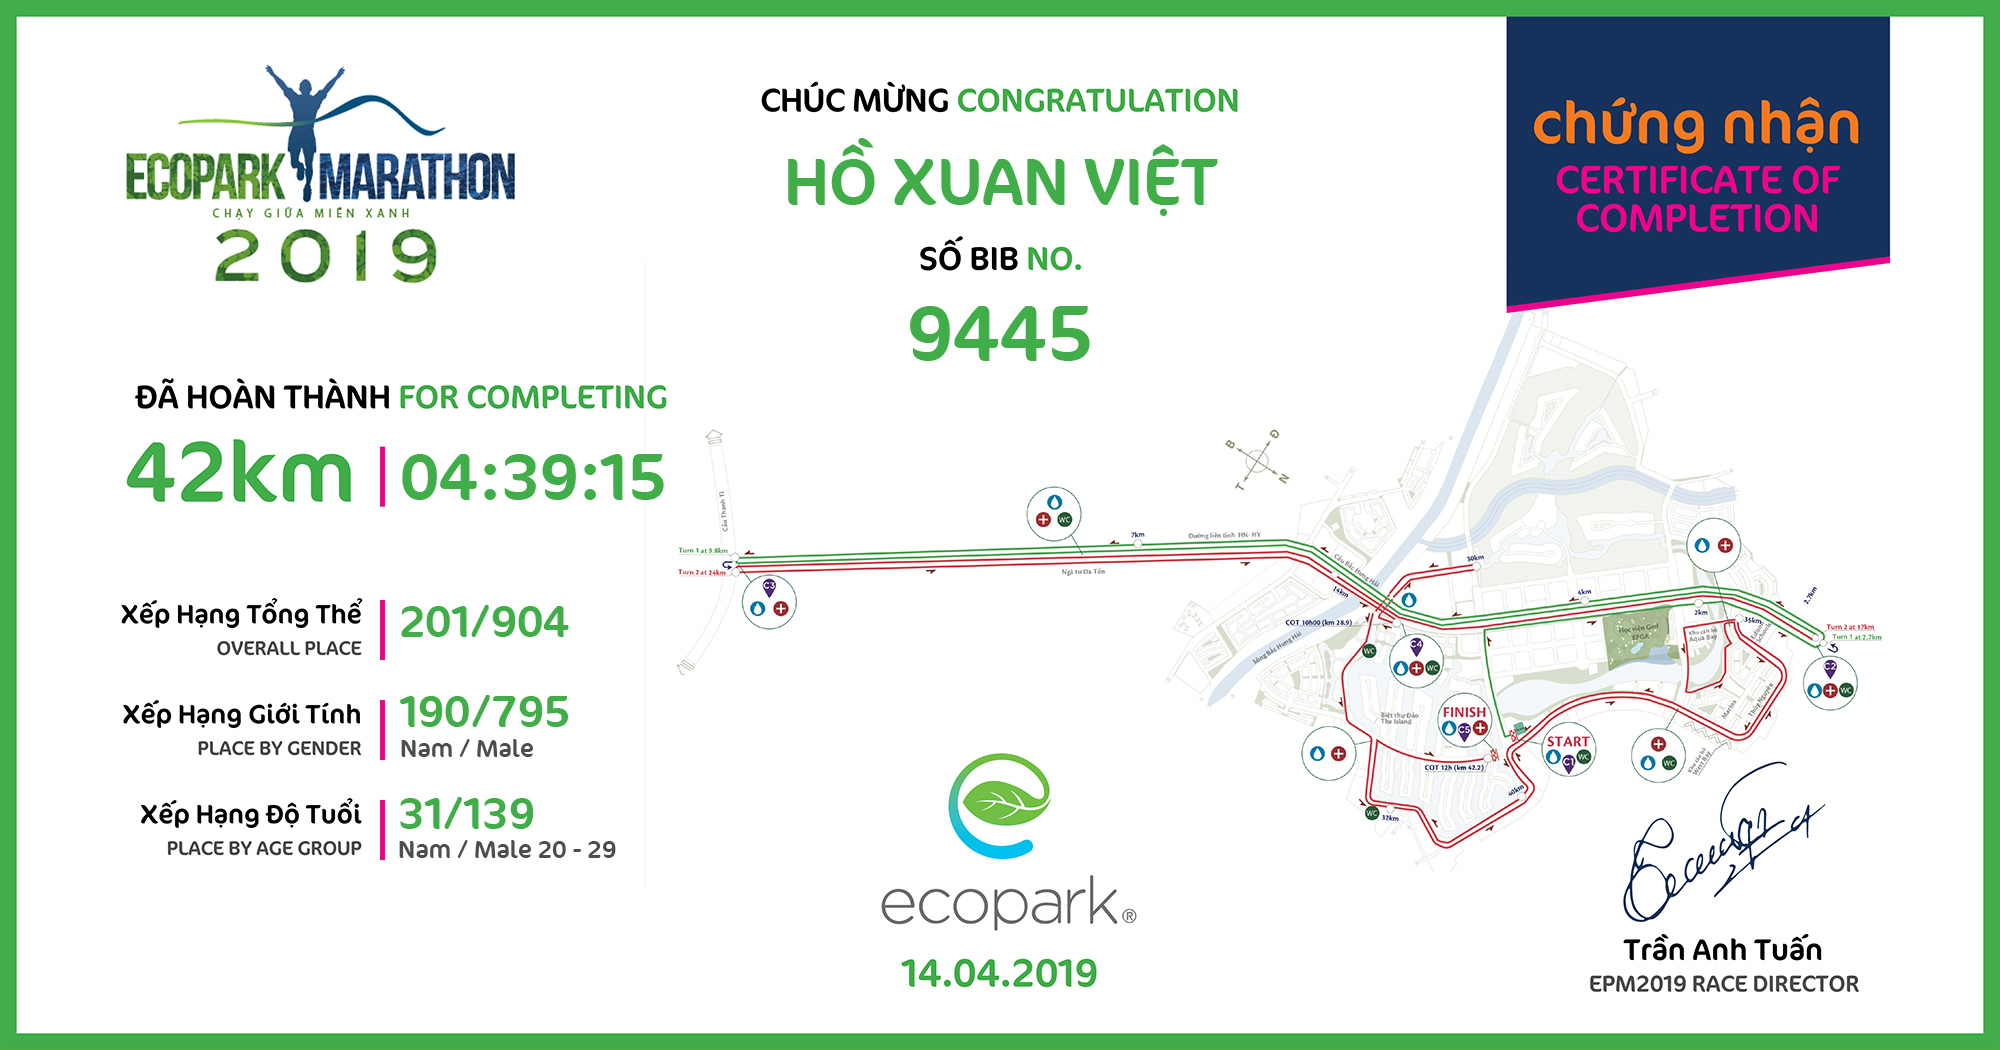 9445 - Hồ xuan Việt